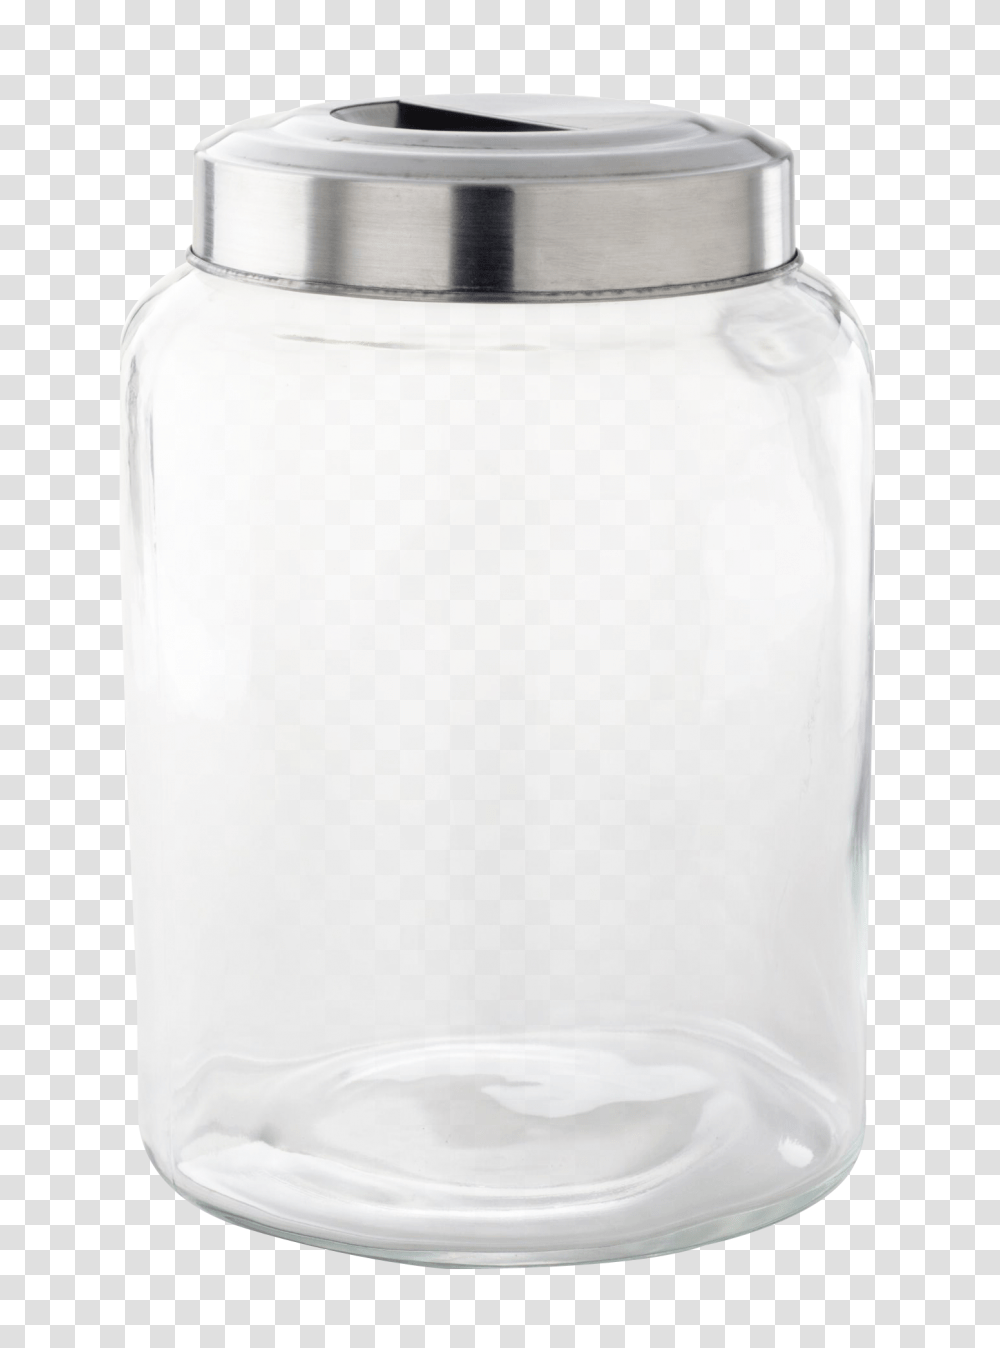 Glass Jar Image, Shaker, Bottle, Diaper, Vase Transparent Png